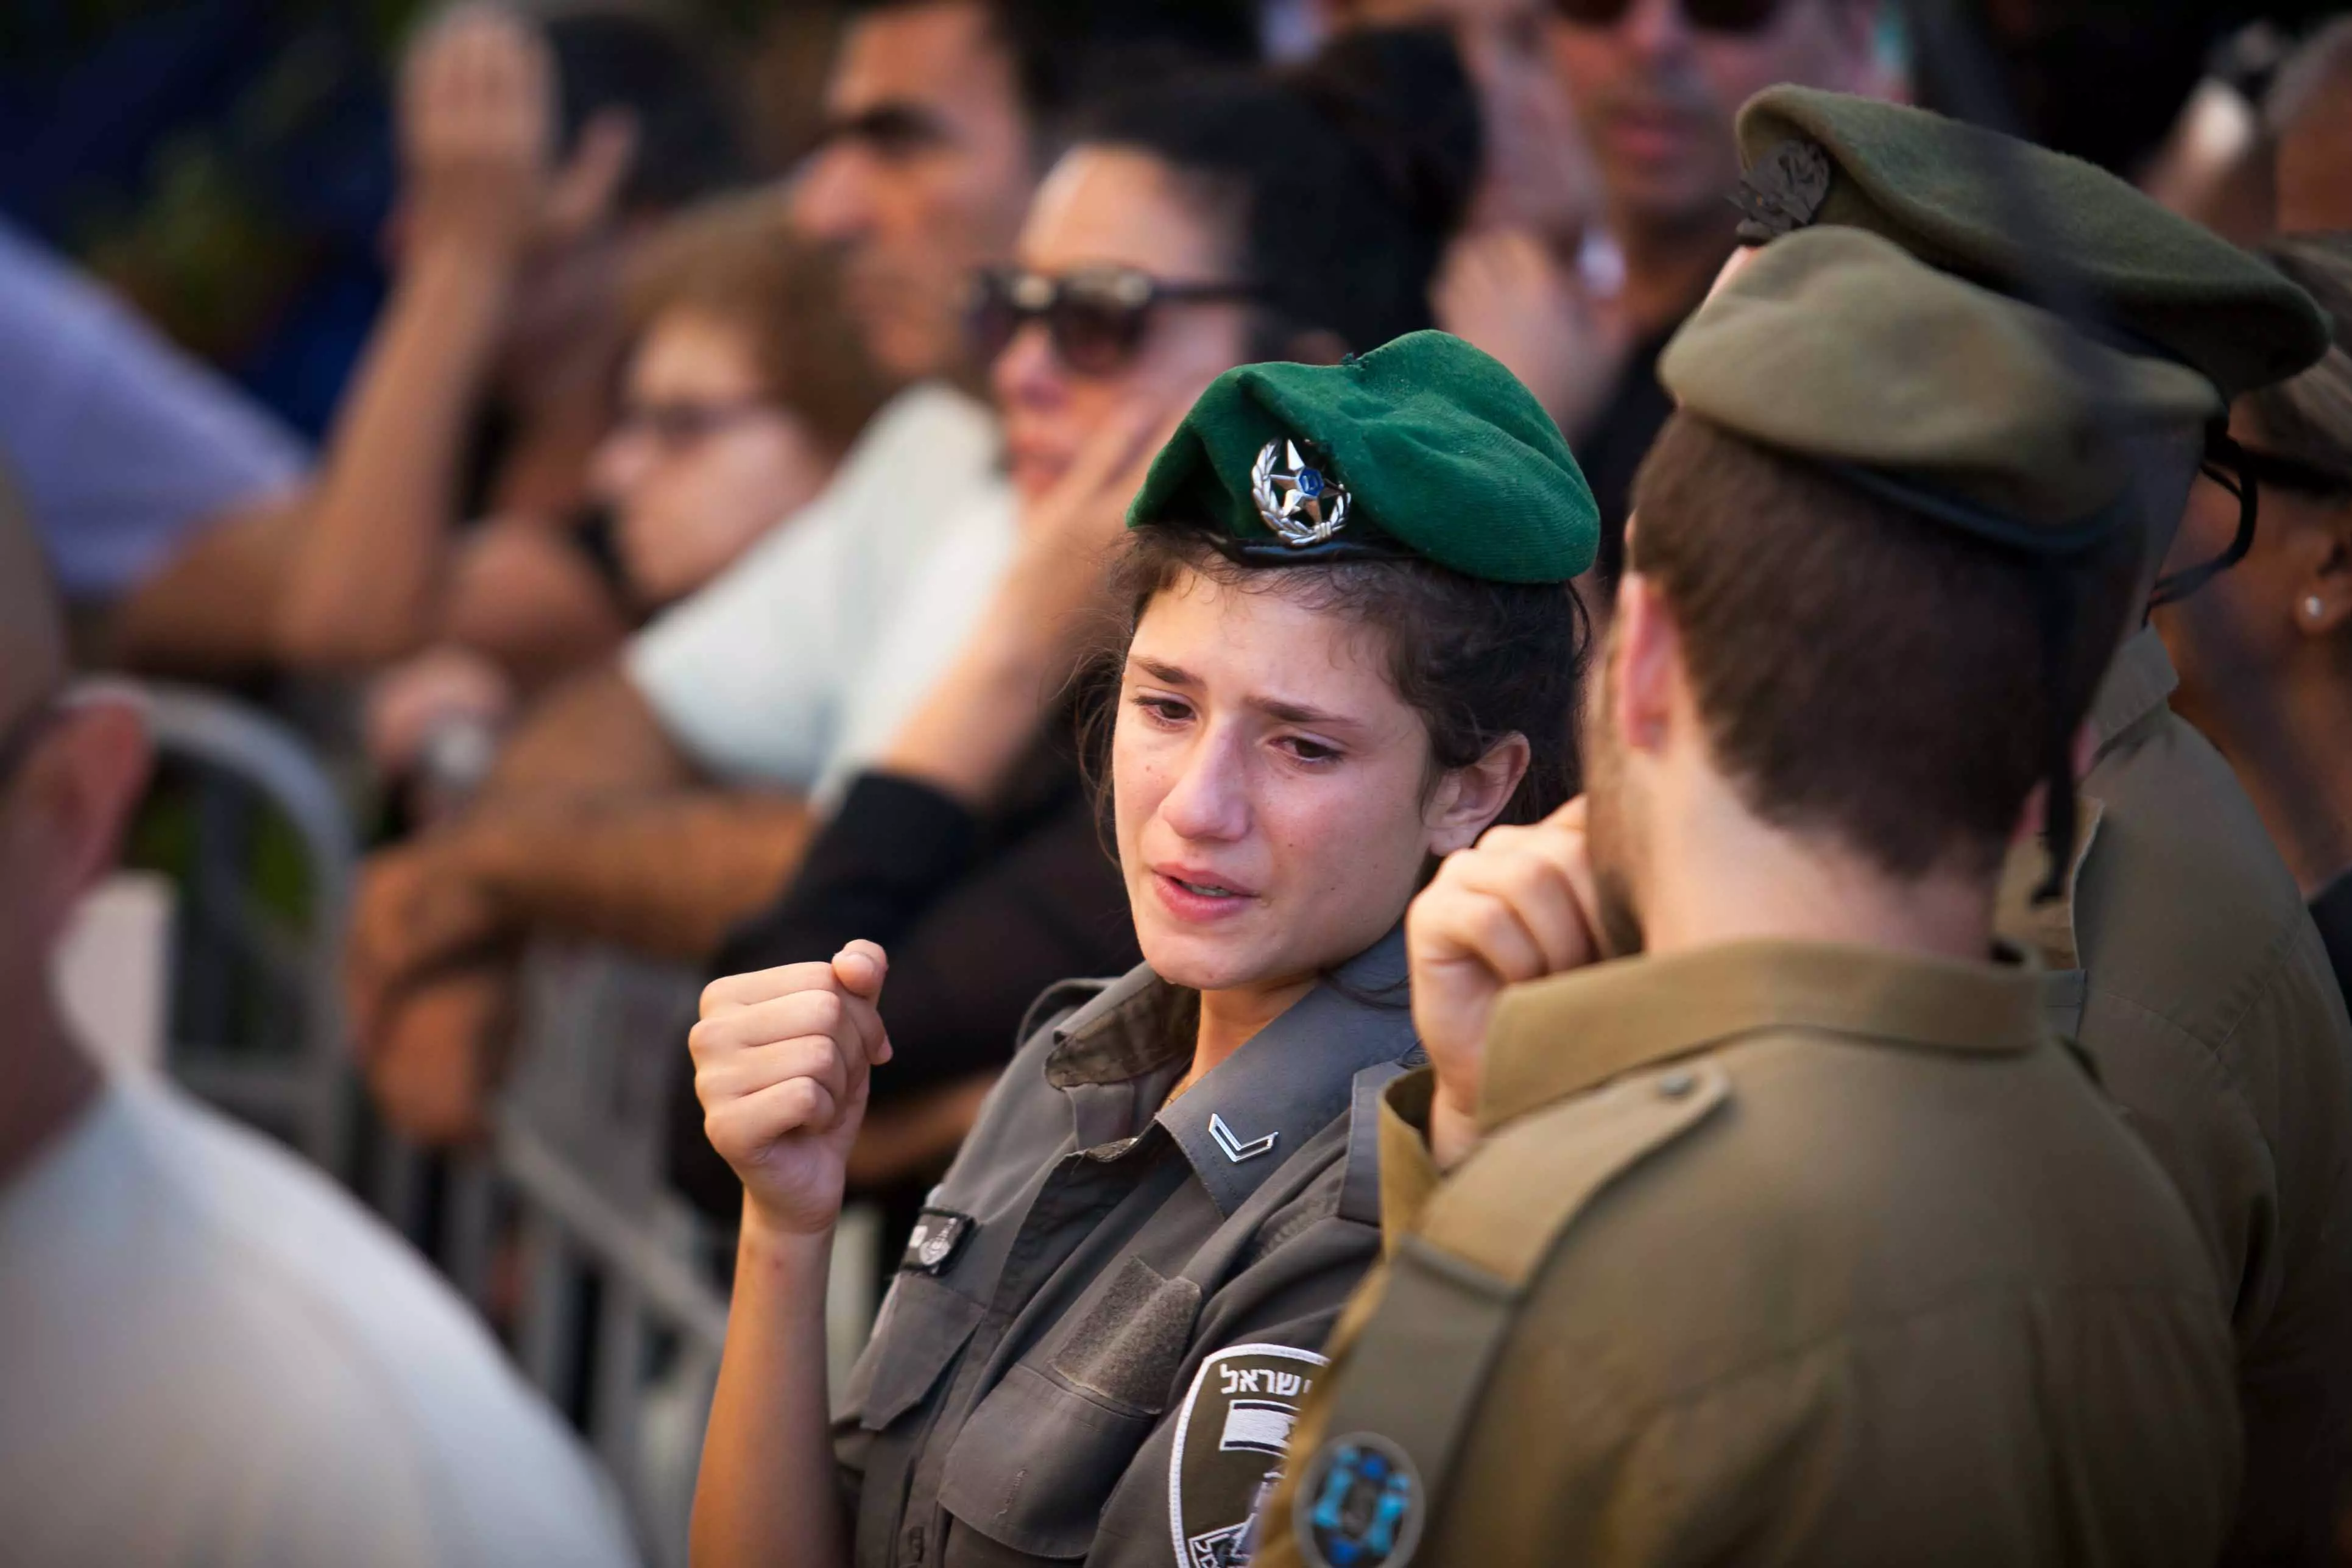 הלווייתו של סמל-ראשון עמית יאורי, שנפל במהלך מבצע צוק איתן, בבית העלמין הצבאי בהר הרצל, יולי 2014